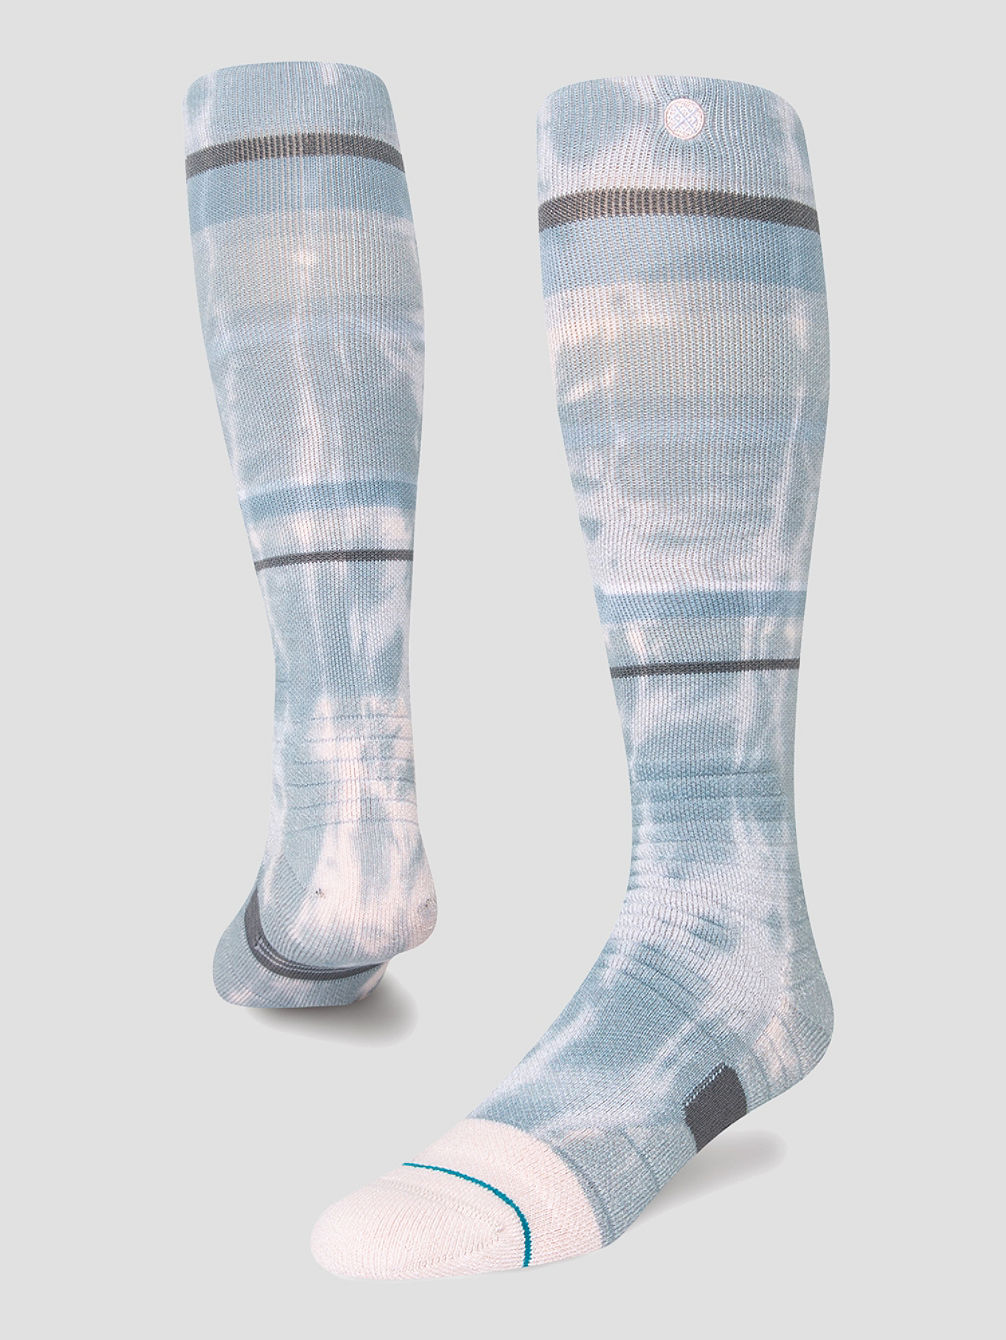 Brong Snow Tech Socks